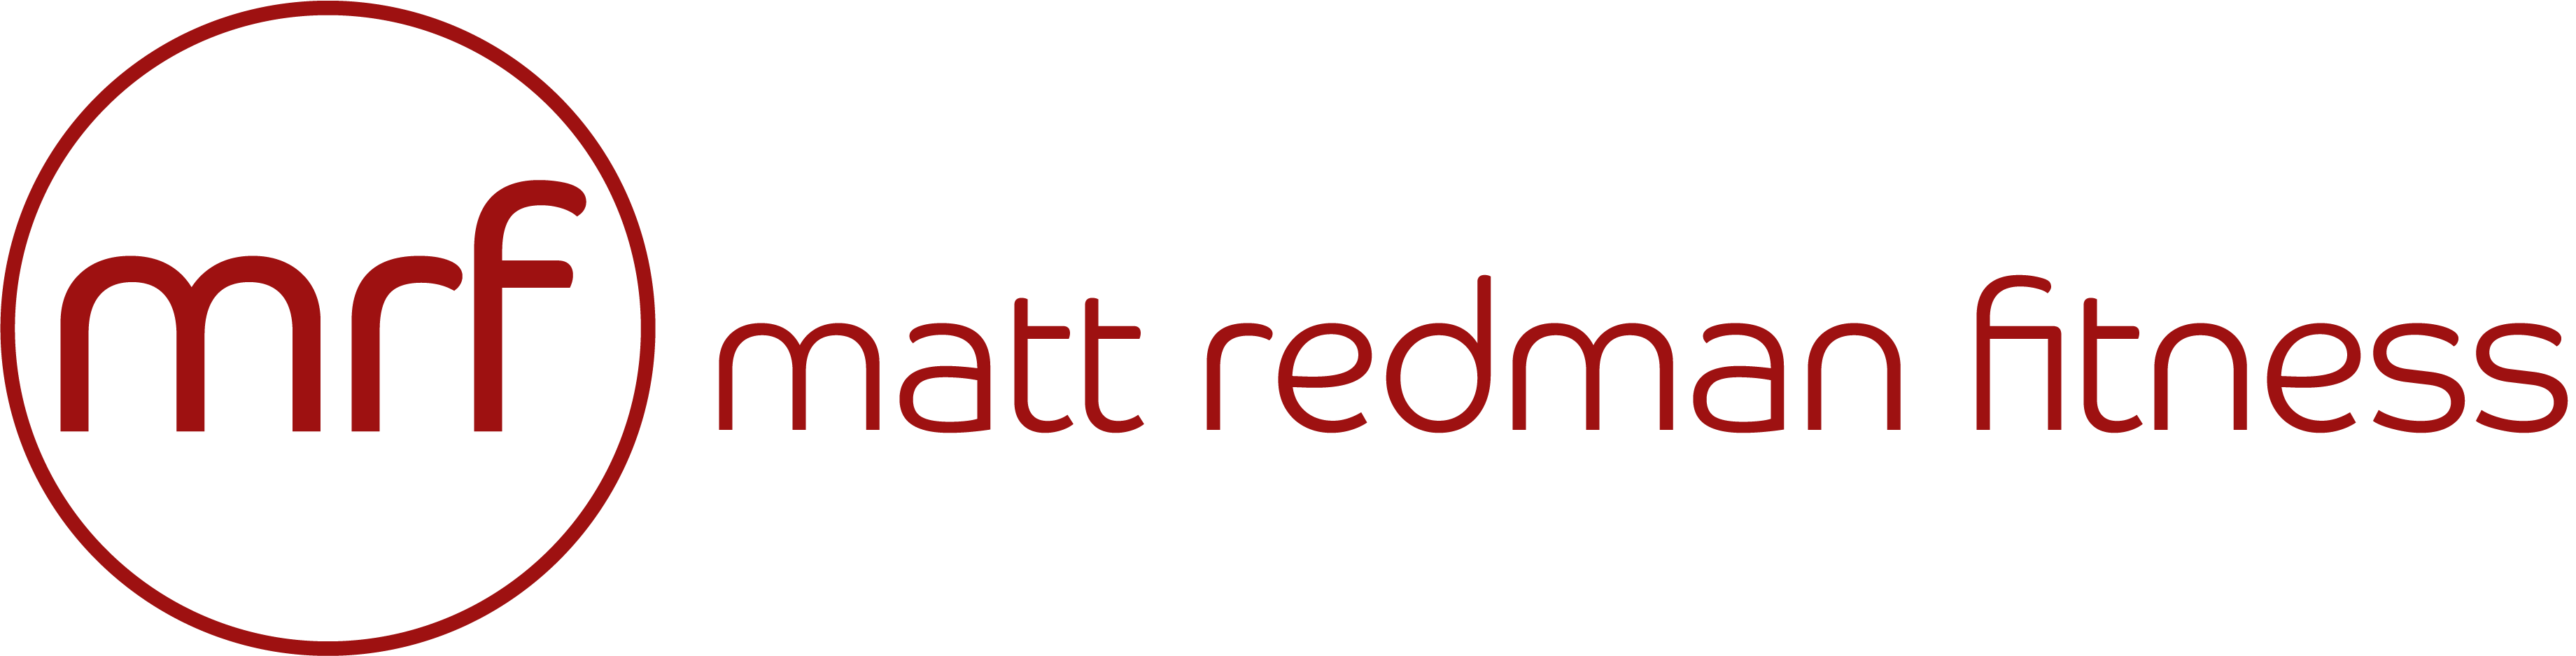 Matt Redman Fitness - App Top Bar